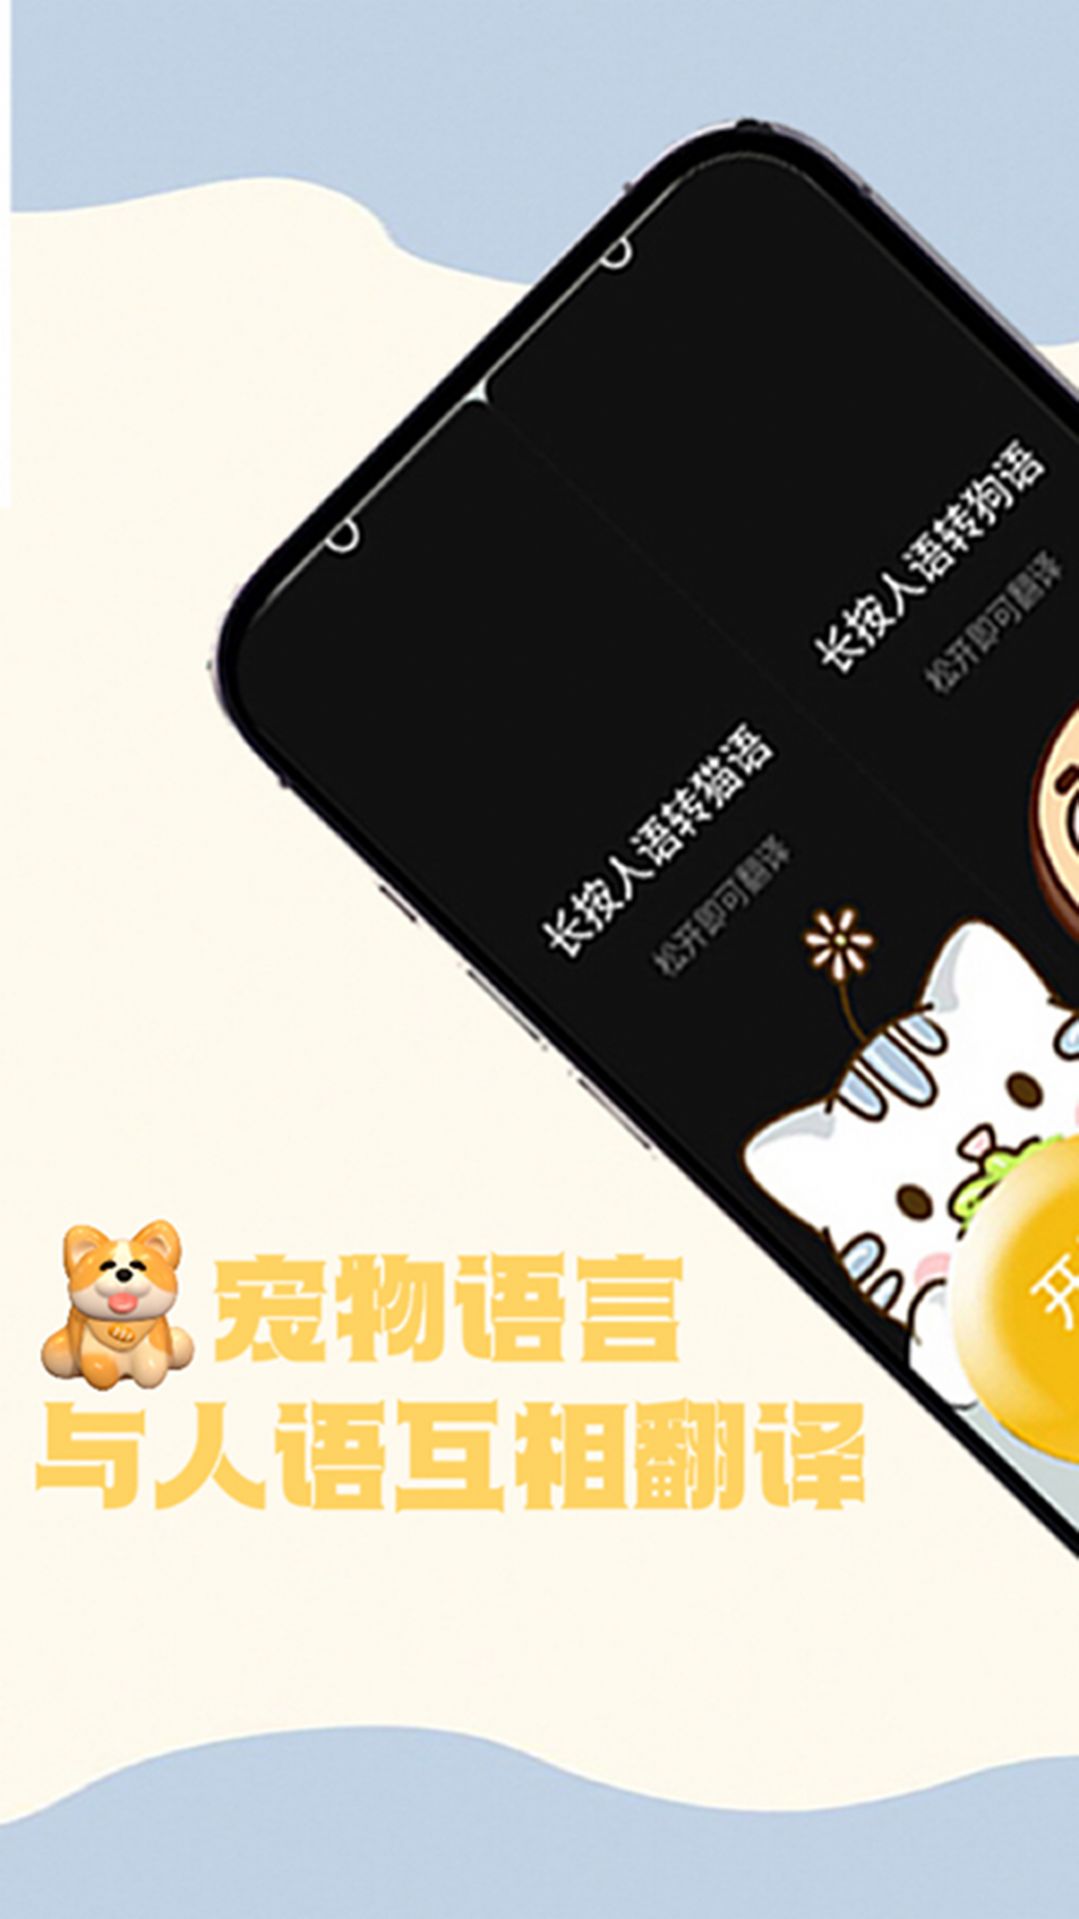 猫狗交谈翻译器app图1